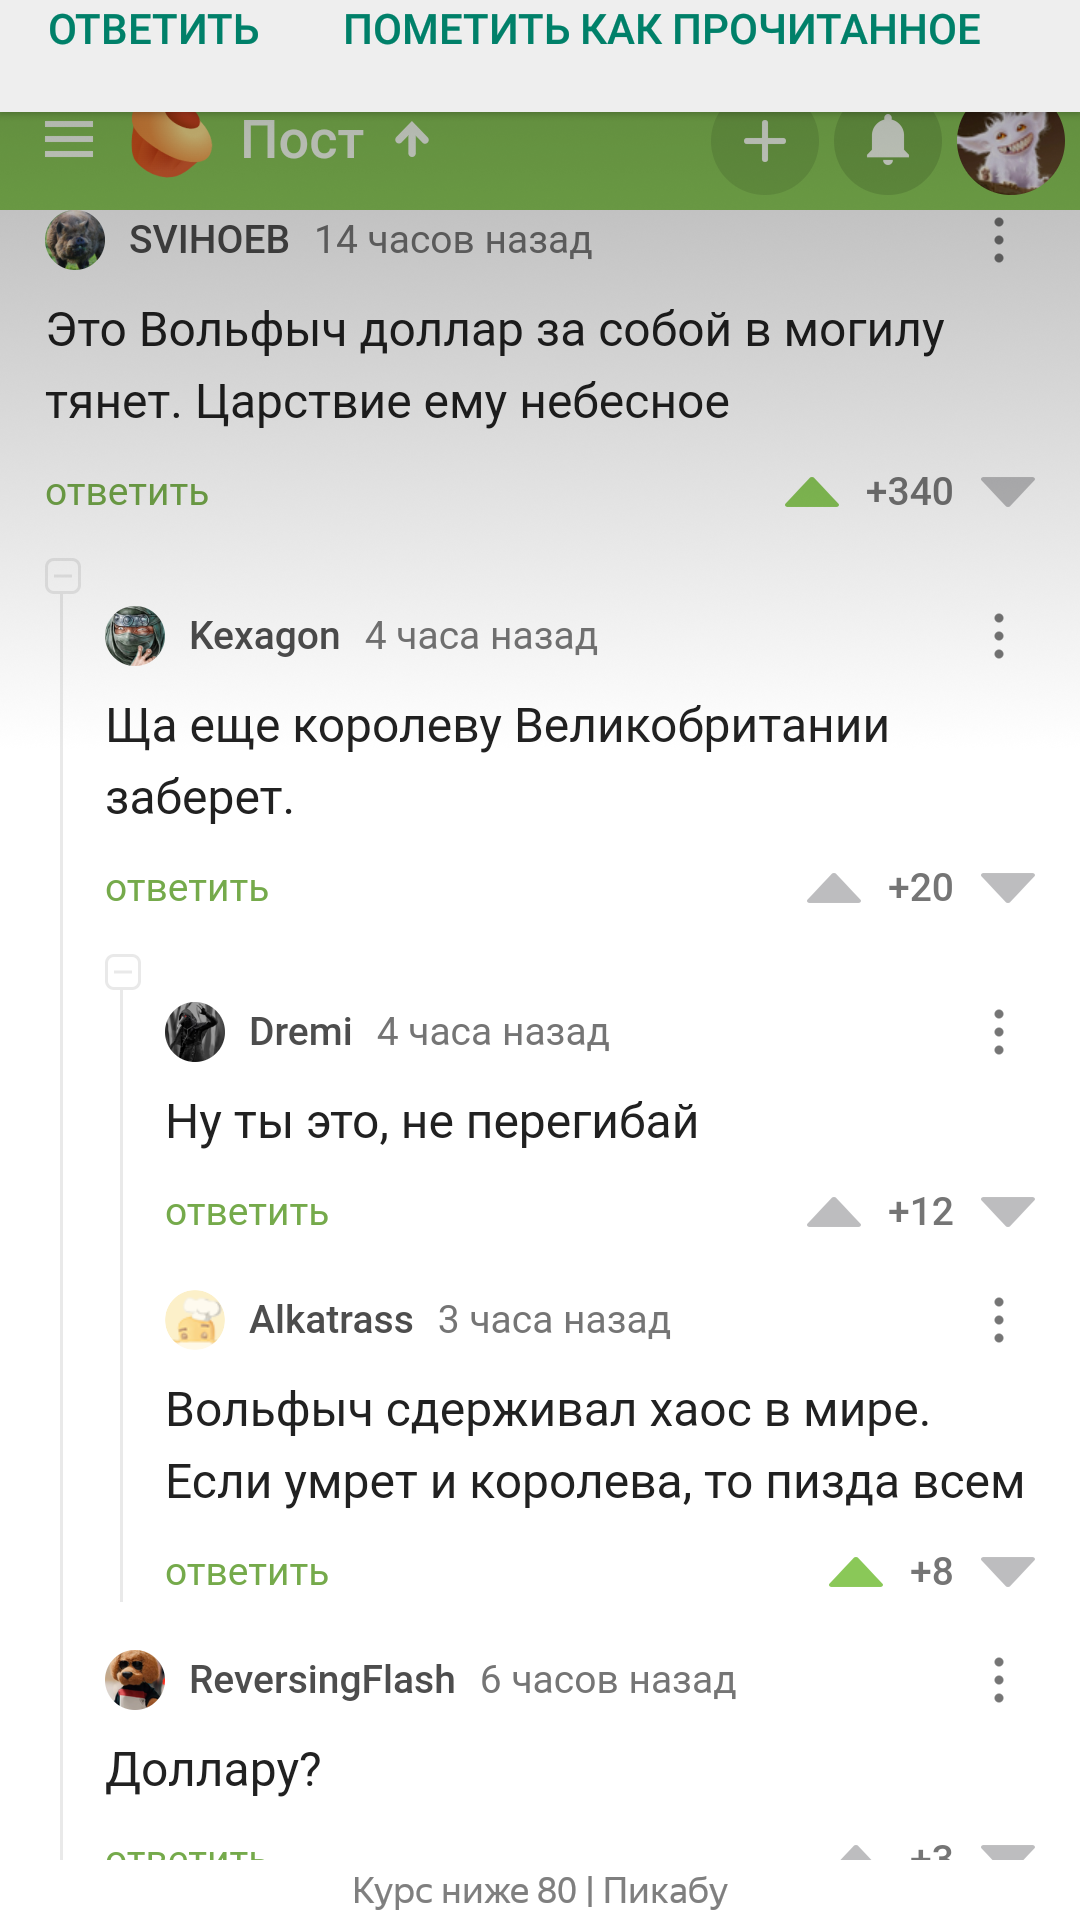 That's it... - Comments on Peekaboo, Dollar rate, Vladimir Zhirinovsky, Screenshot, Mat, 